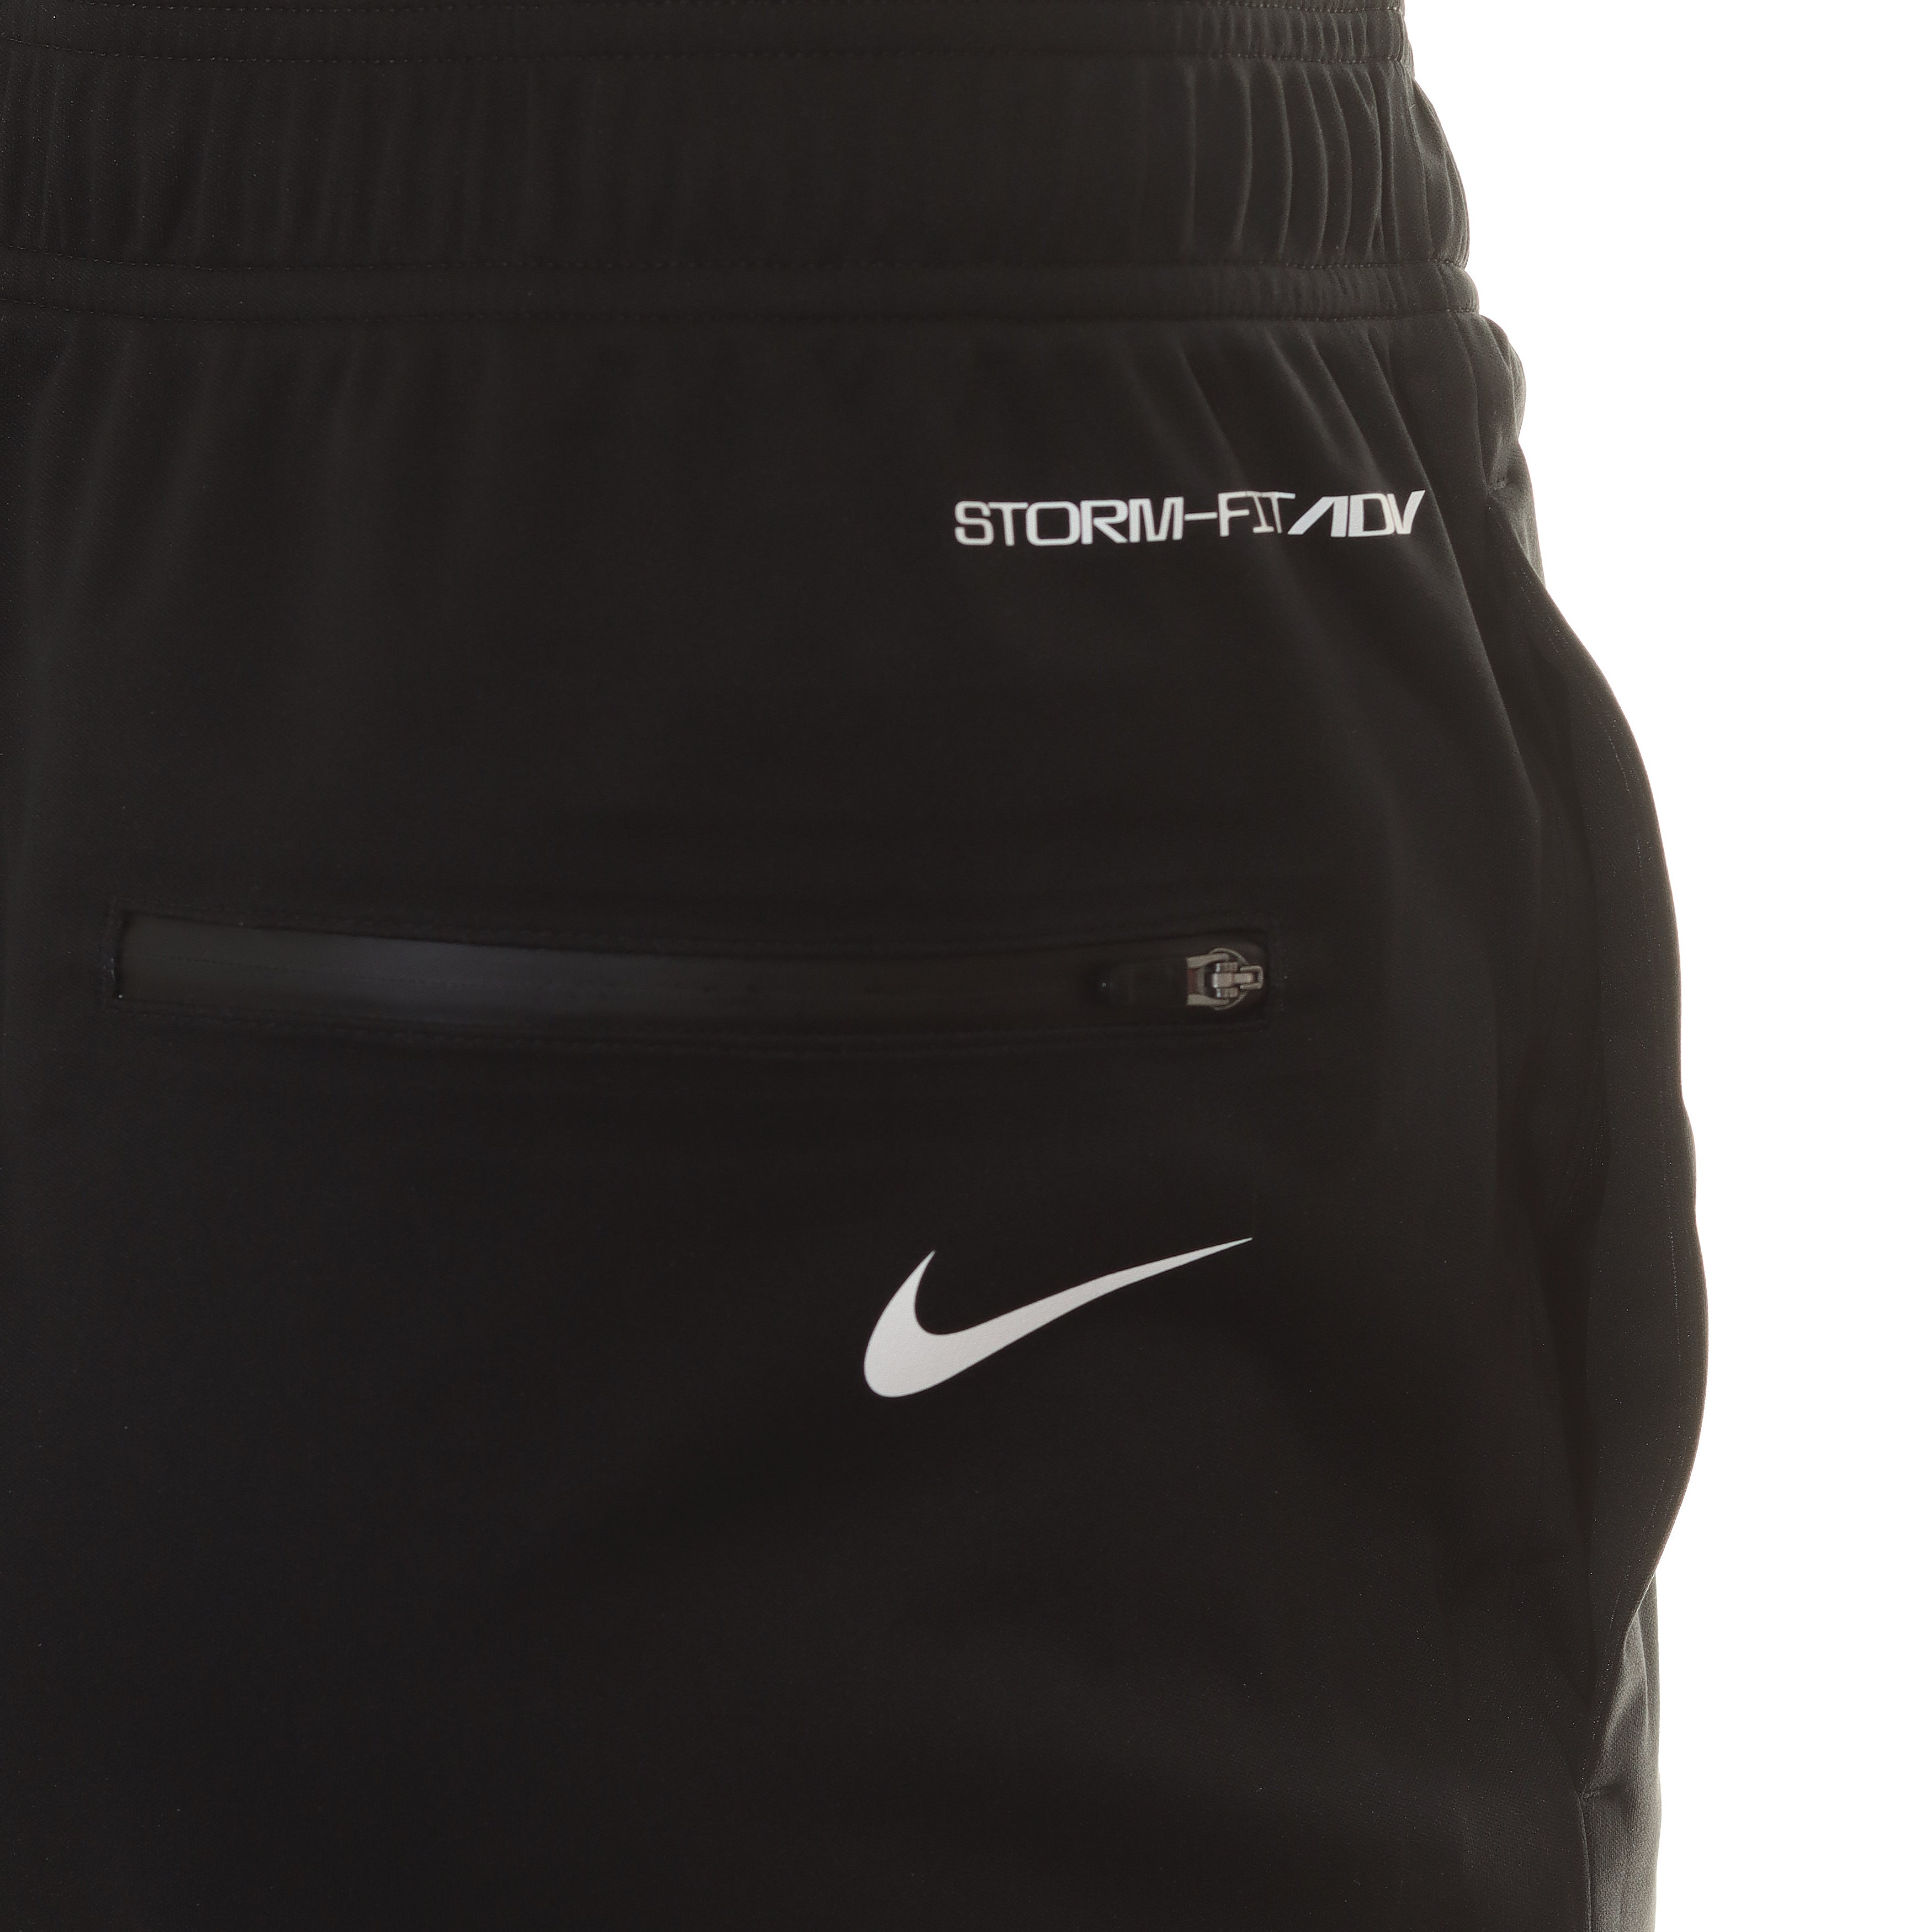 Nike Golf Storm-Fit ADV Waterproof Pants DX6076 Black 010 | Function18